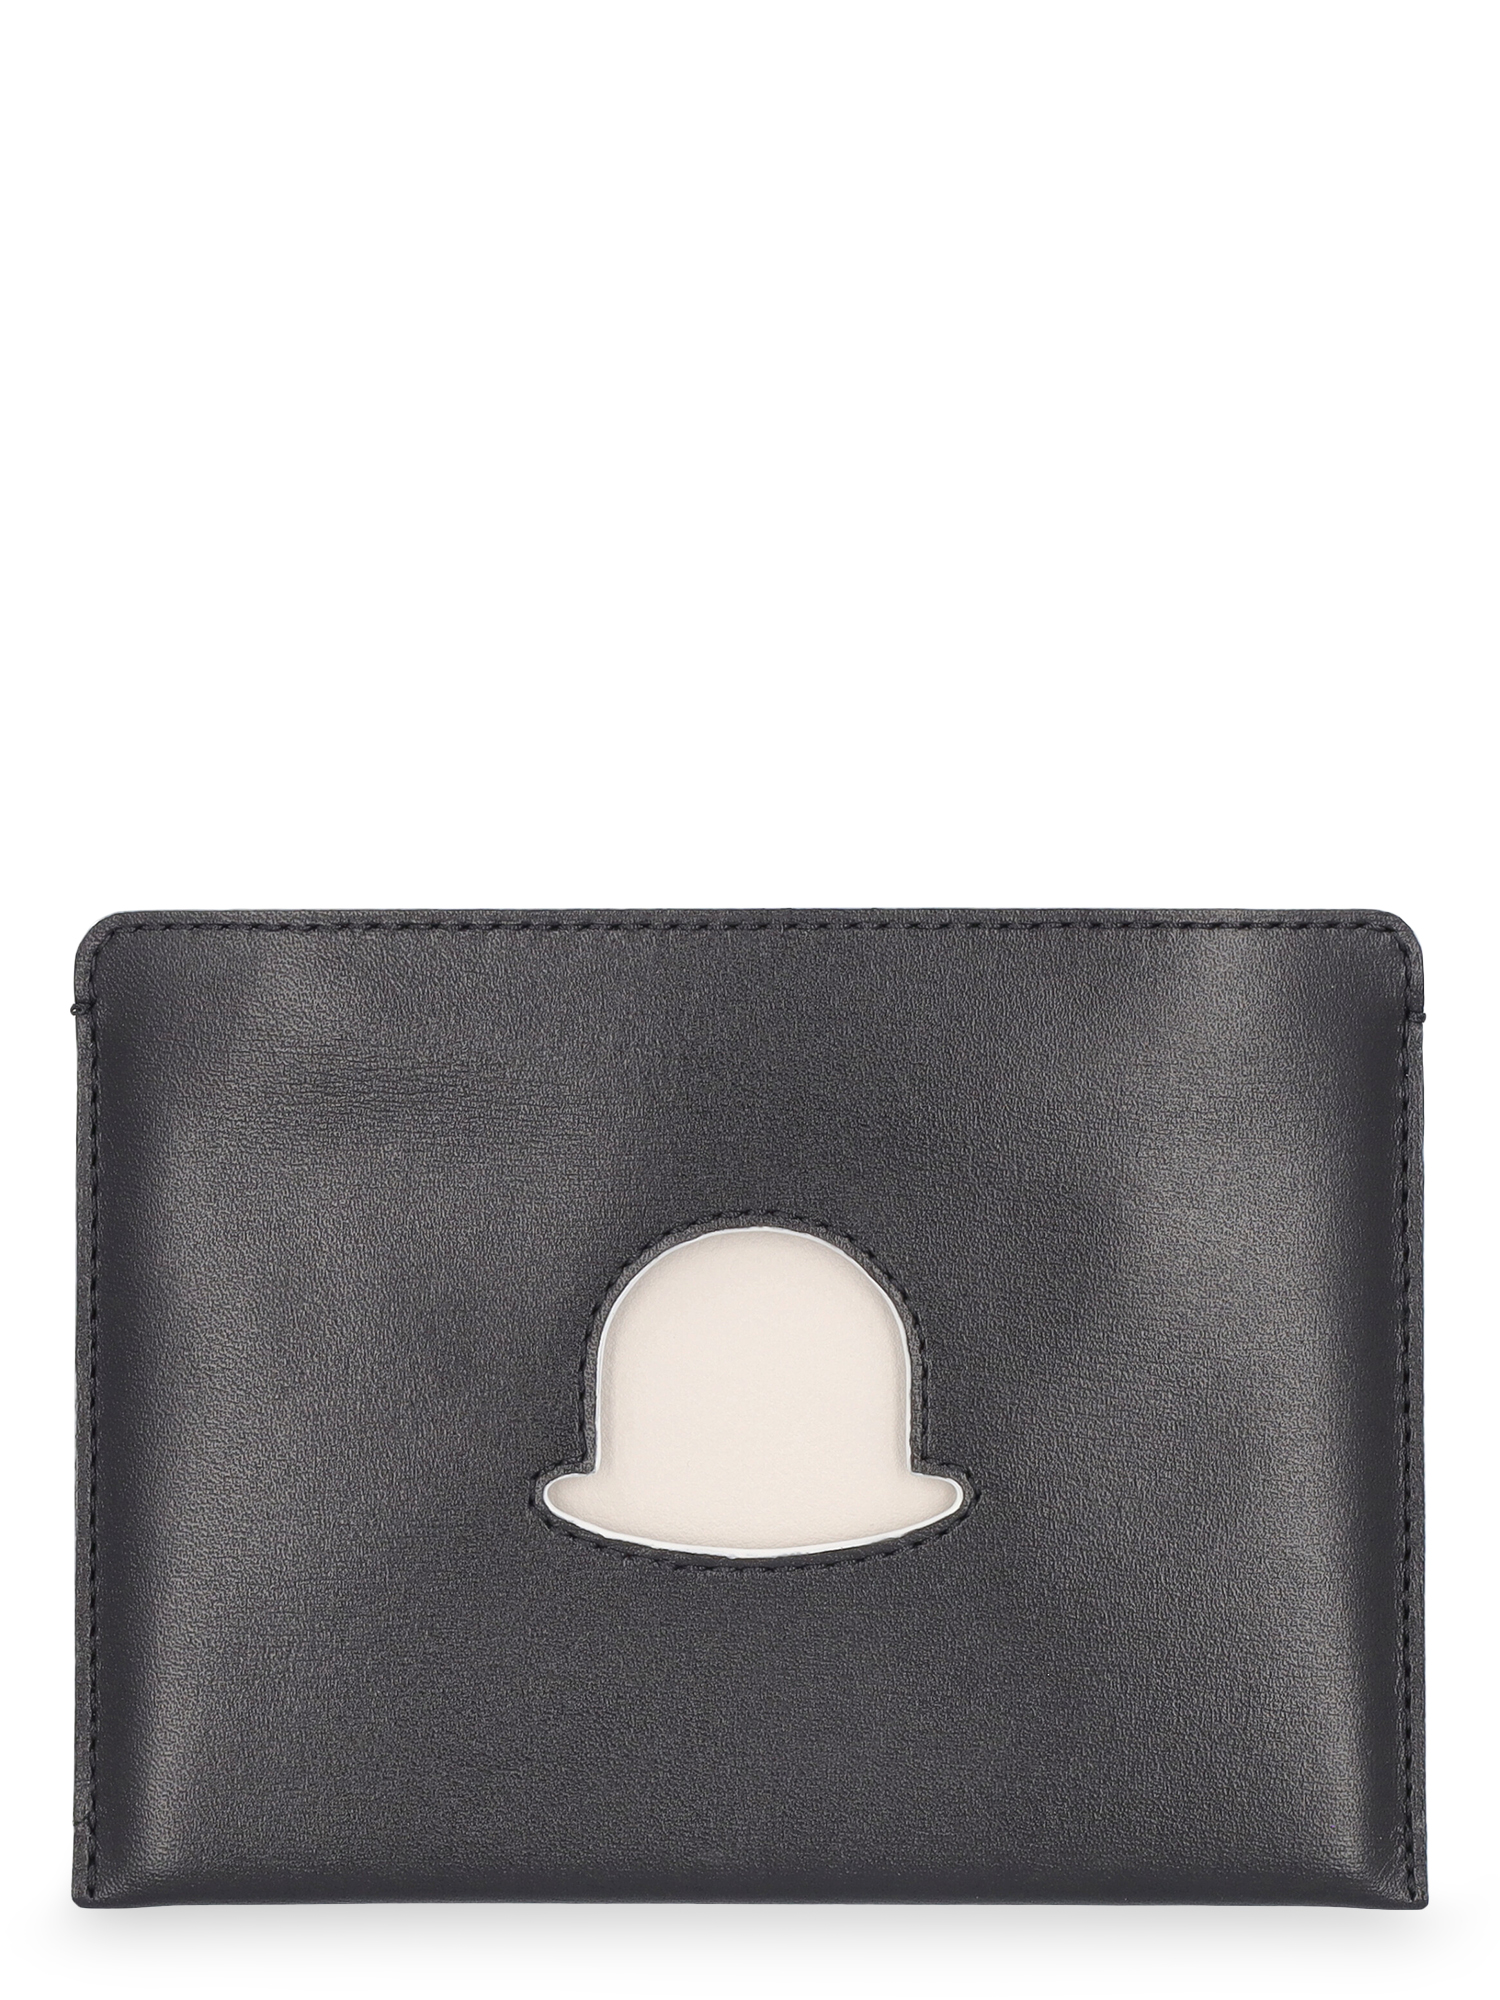 Delvaux Women's Wallets -  - In Black, White Leather